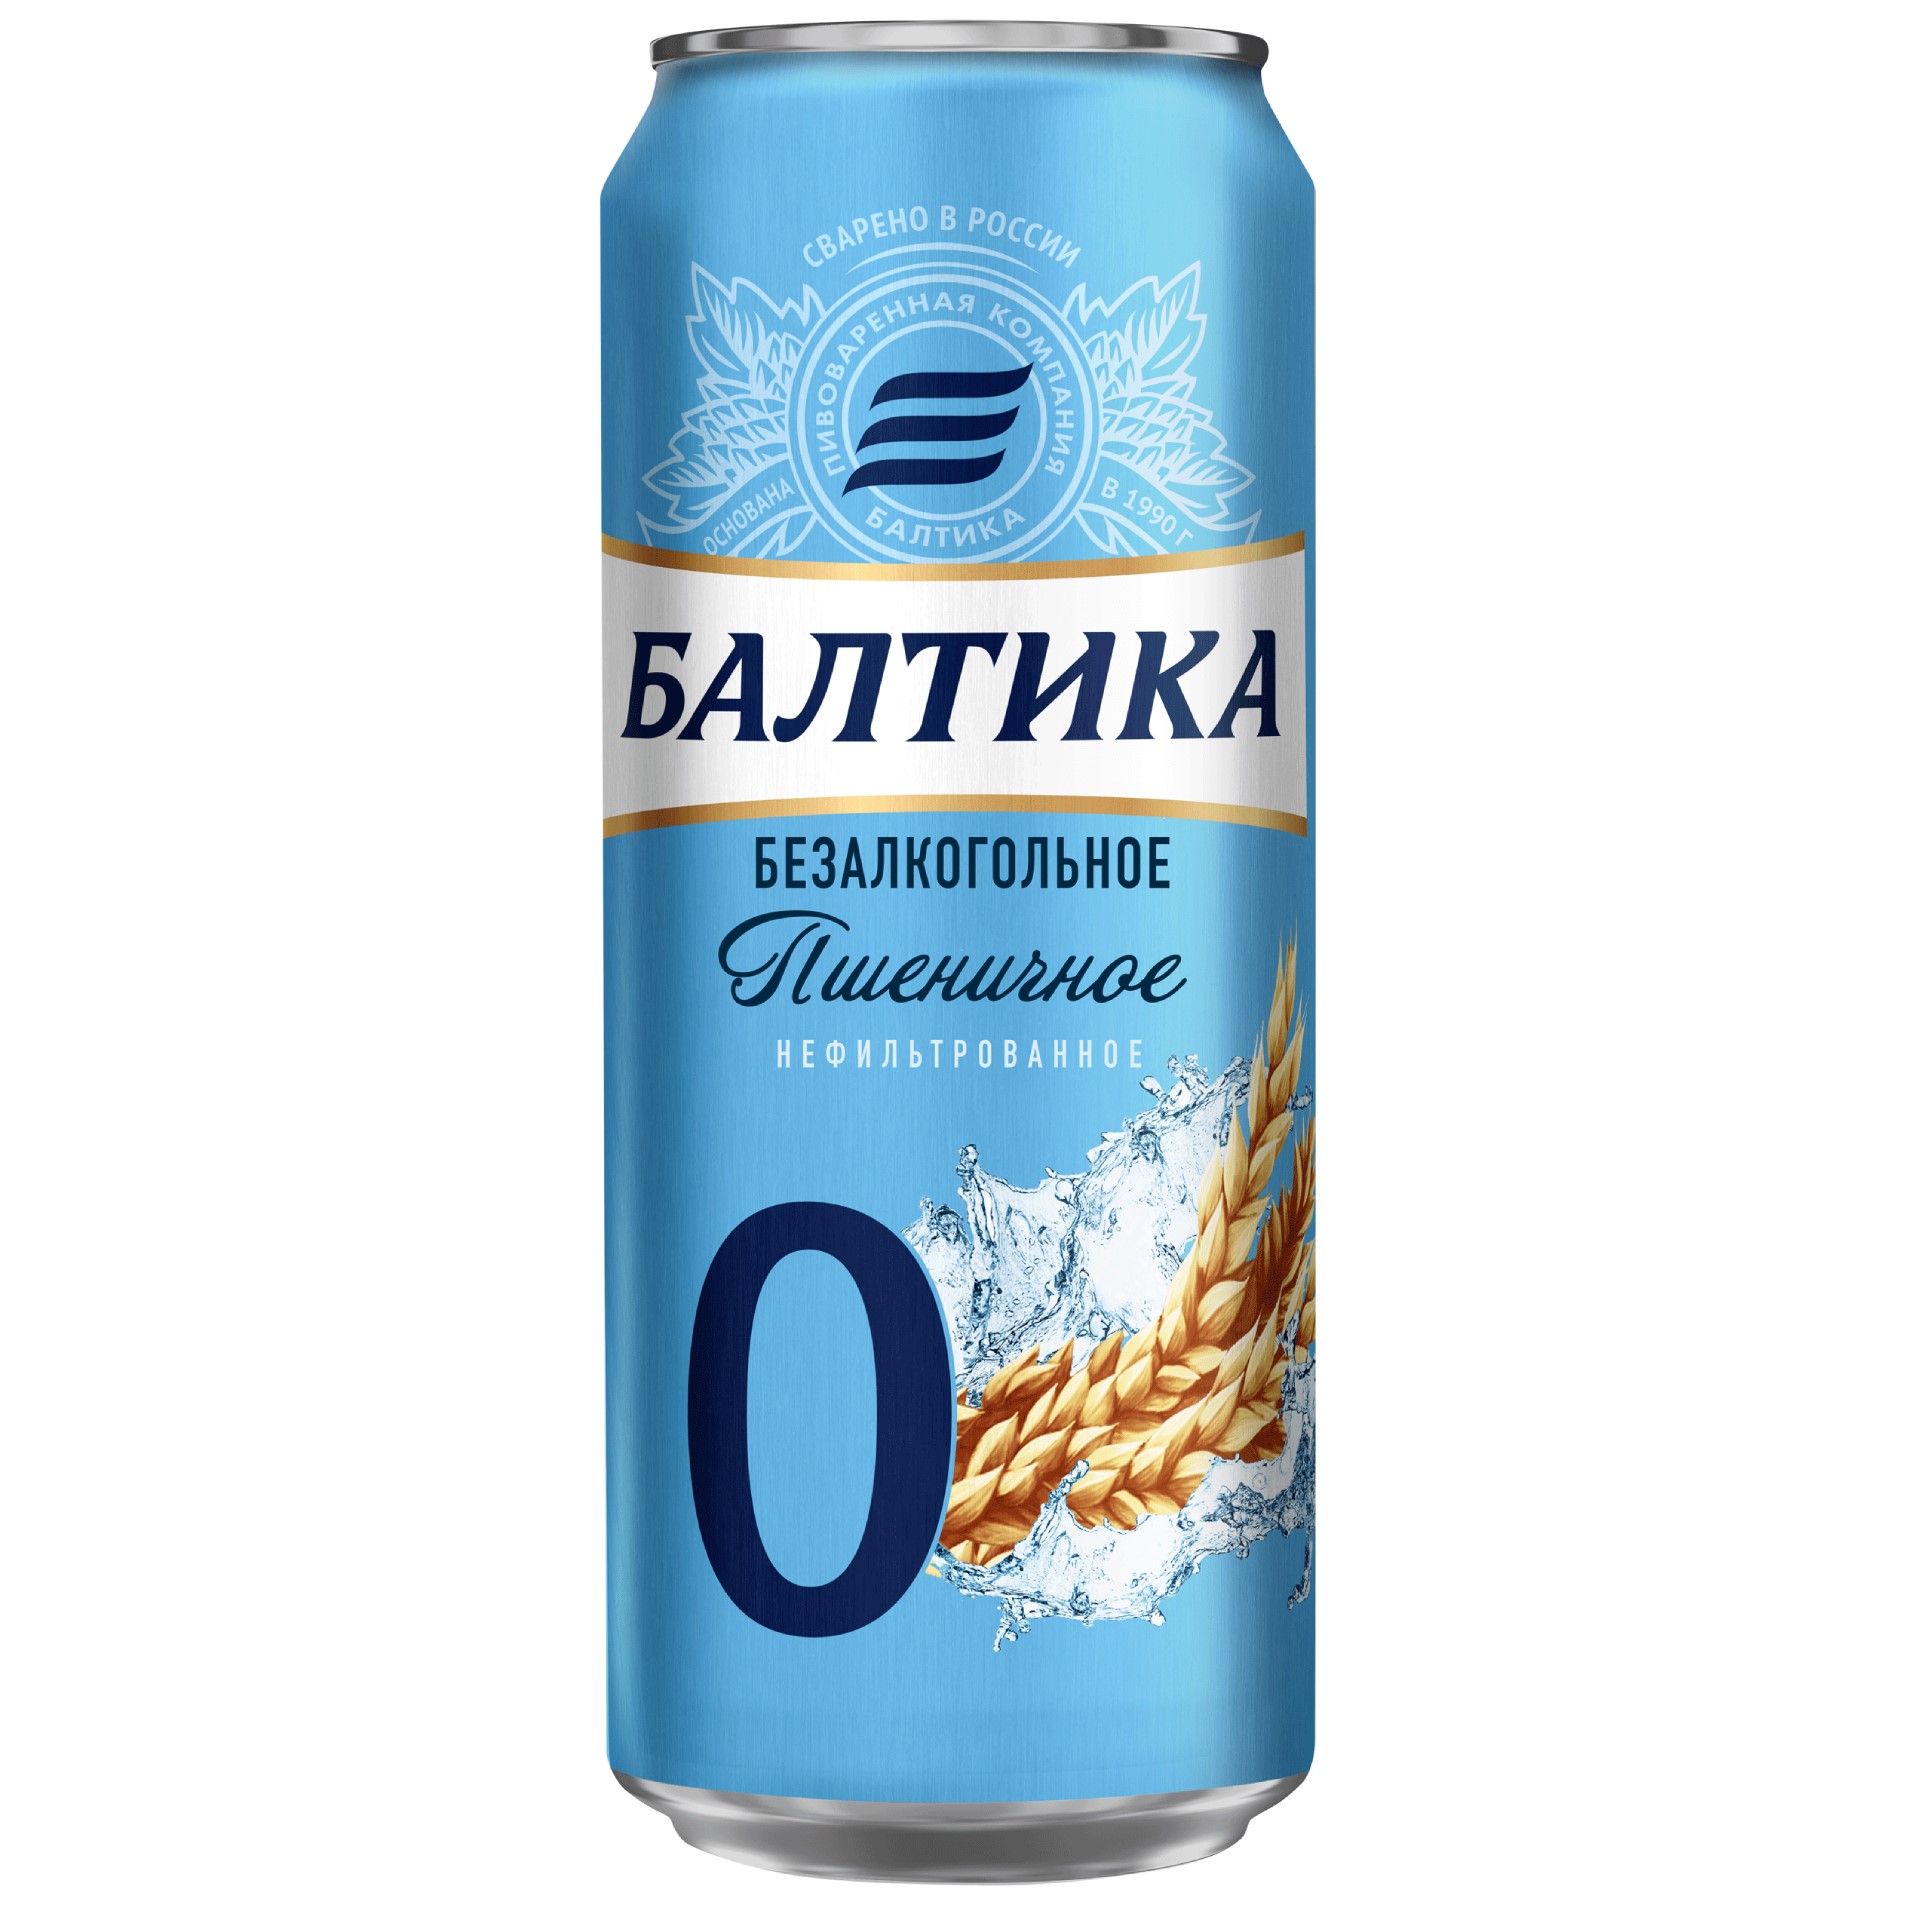 Пшеничное безалкогольное пиво. Пиво Балтика 0 безалкогольное пшеничное. Пиво безалкогольное Балтика пшеничное. Пиво Балтика №0 безалкогольное 0,45л ж/б. Пиво Балтика 0 пшеничное нефильтрованное.